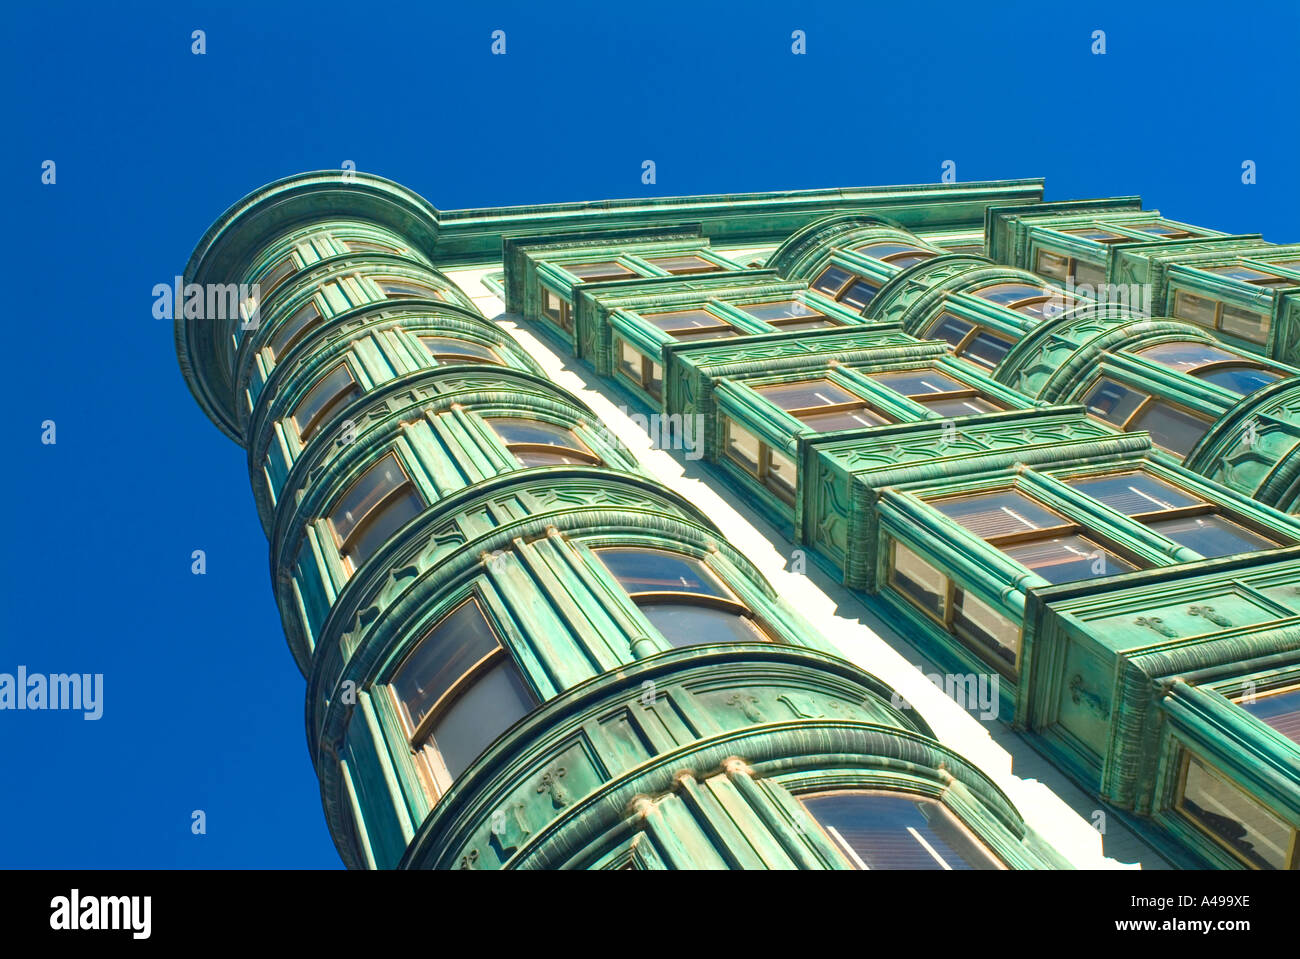 Alte grüne Gebäude in San Francisco bekannt als Columbus Tower oxidiert  Kupfer produziert die grüne Farbe Stockfotografie - Alamy